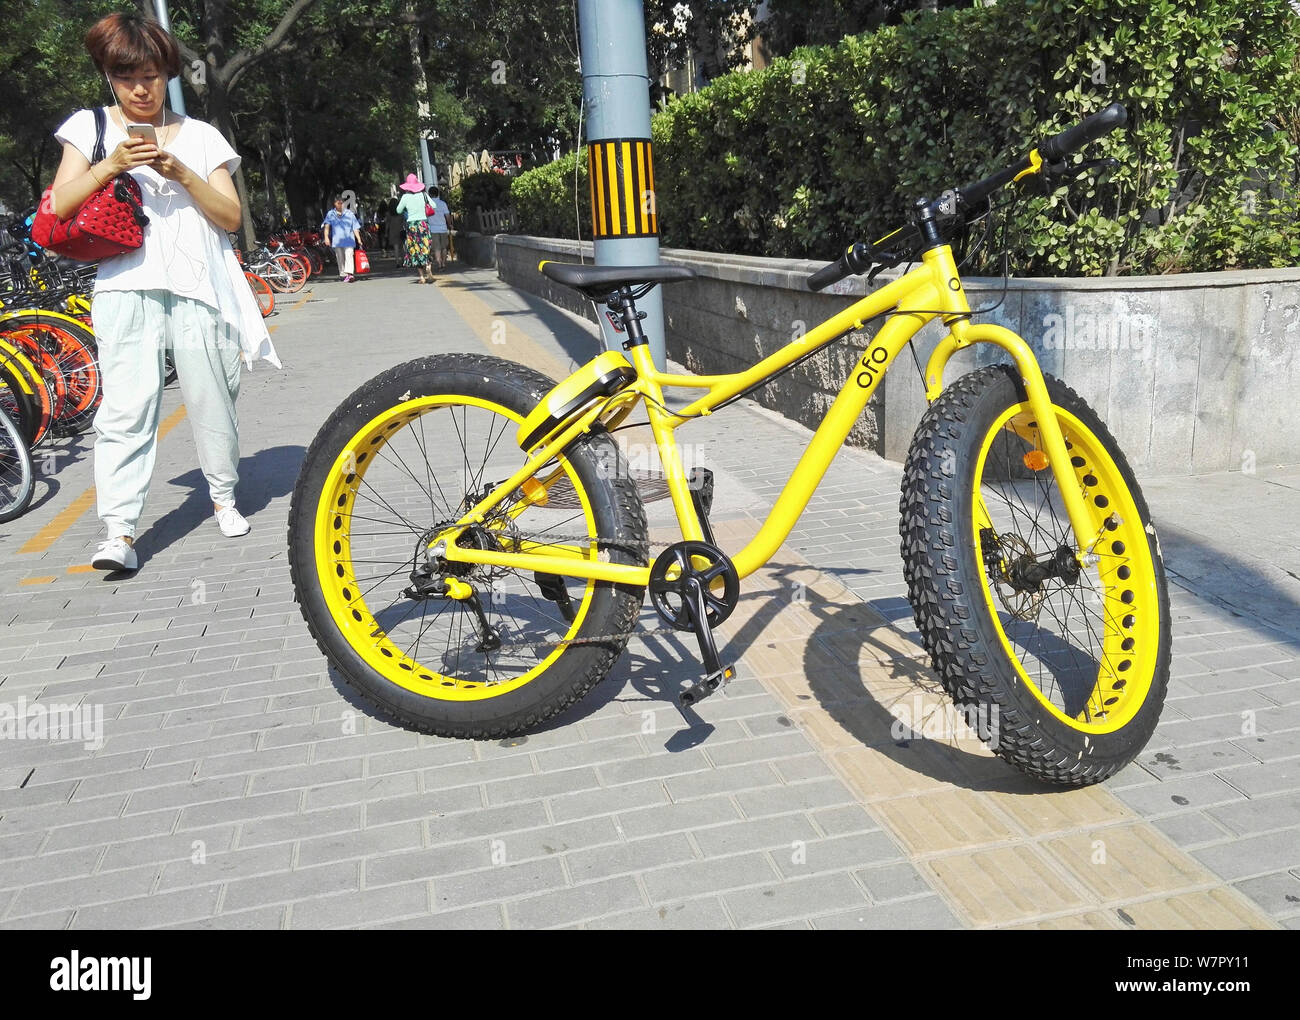 Un pedone prende le foto di un fatbike con pneumatici di grandi dimensioni, chiamato anche bici fat o fat-tire bike, Cinese di bike sharing service ofo, a Pechino, C Foto Stock